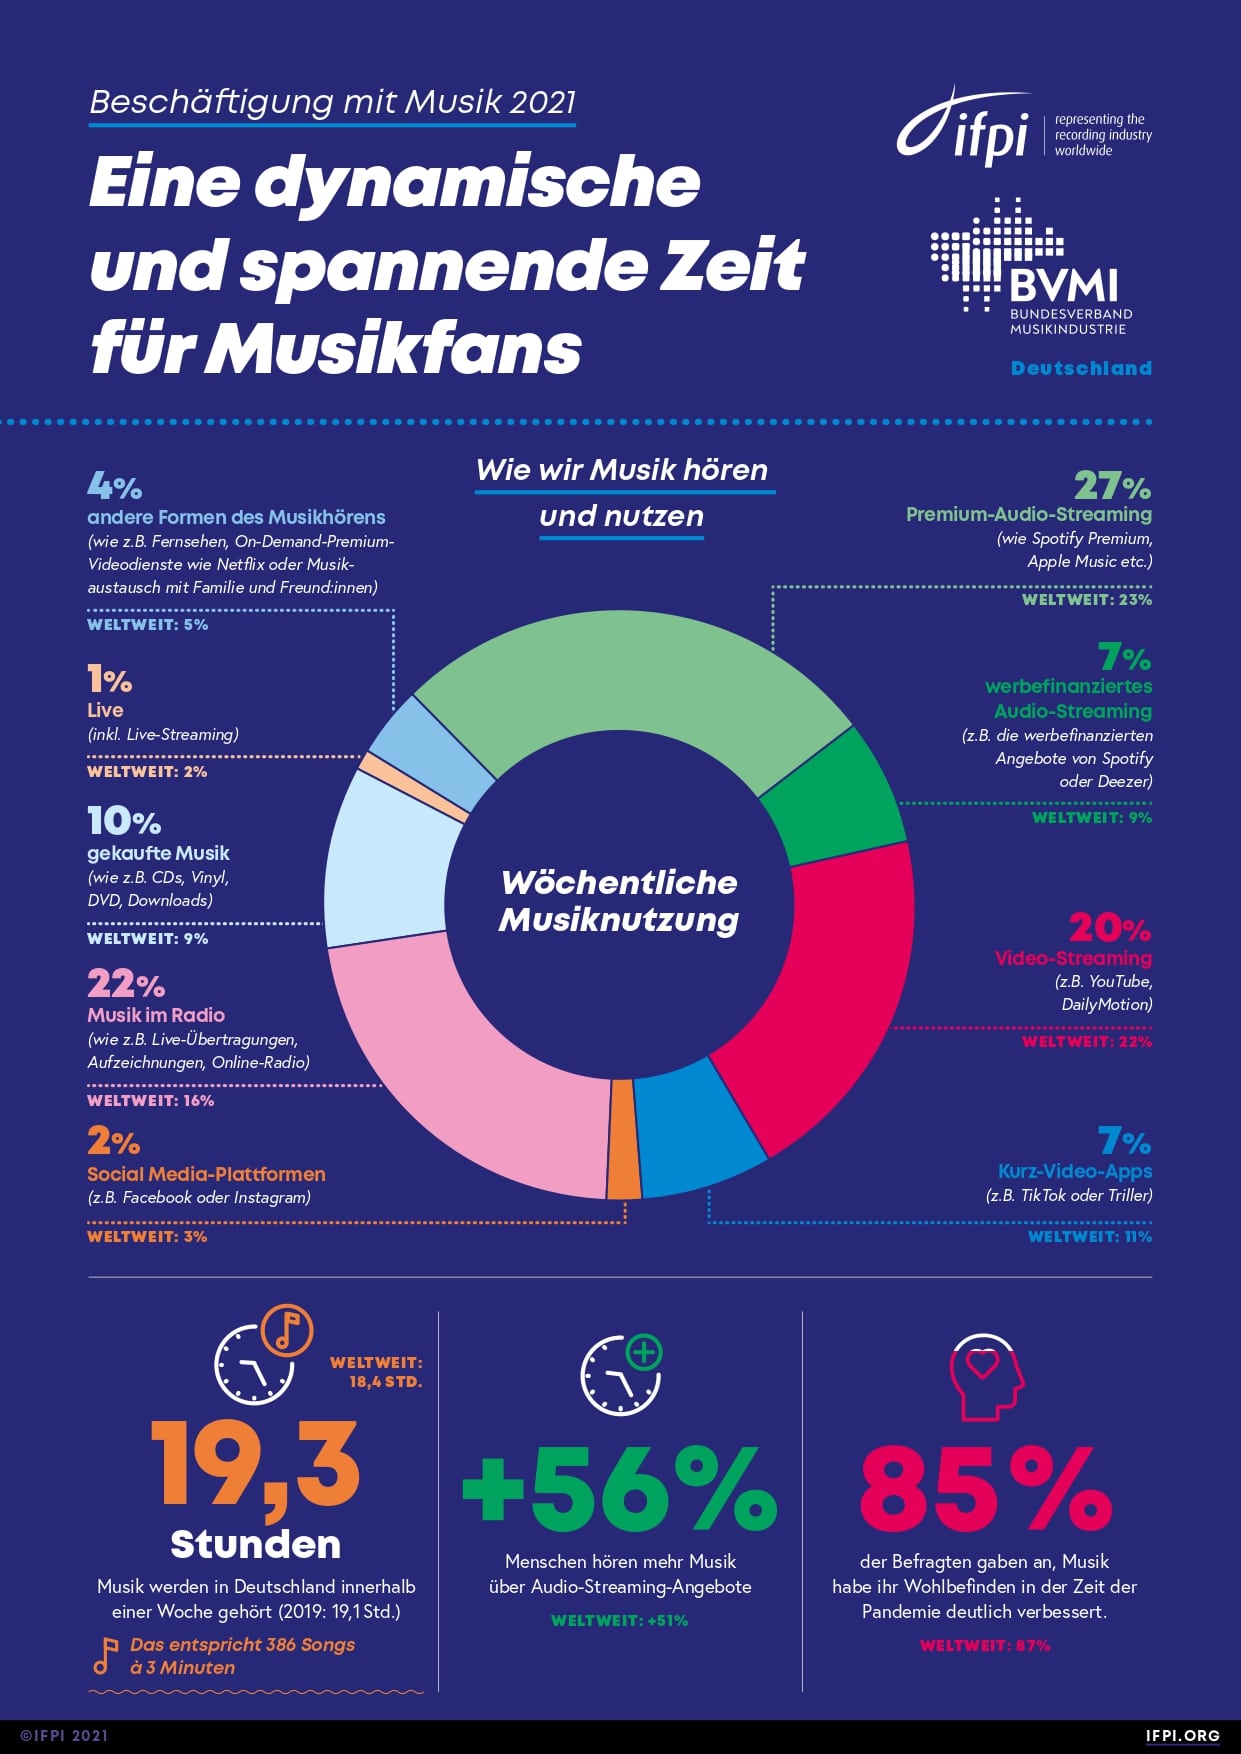 Étude IFPI du 21/10/2021 sur la consommation de musique en Allemagne. 